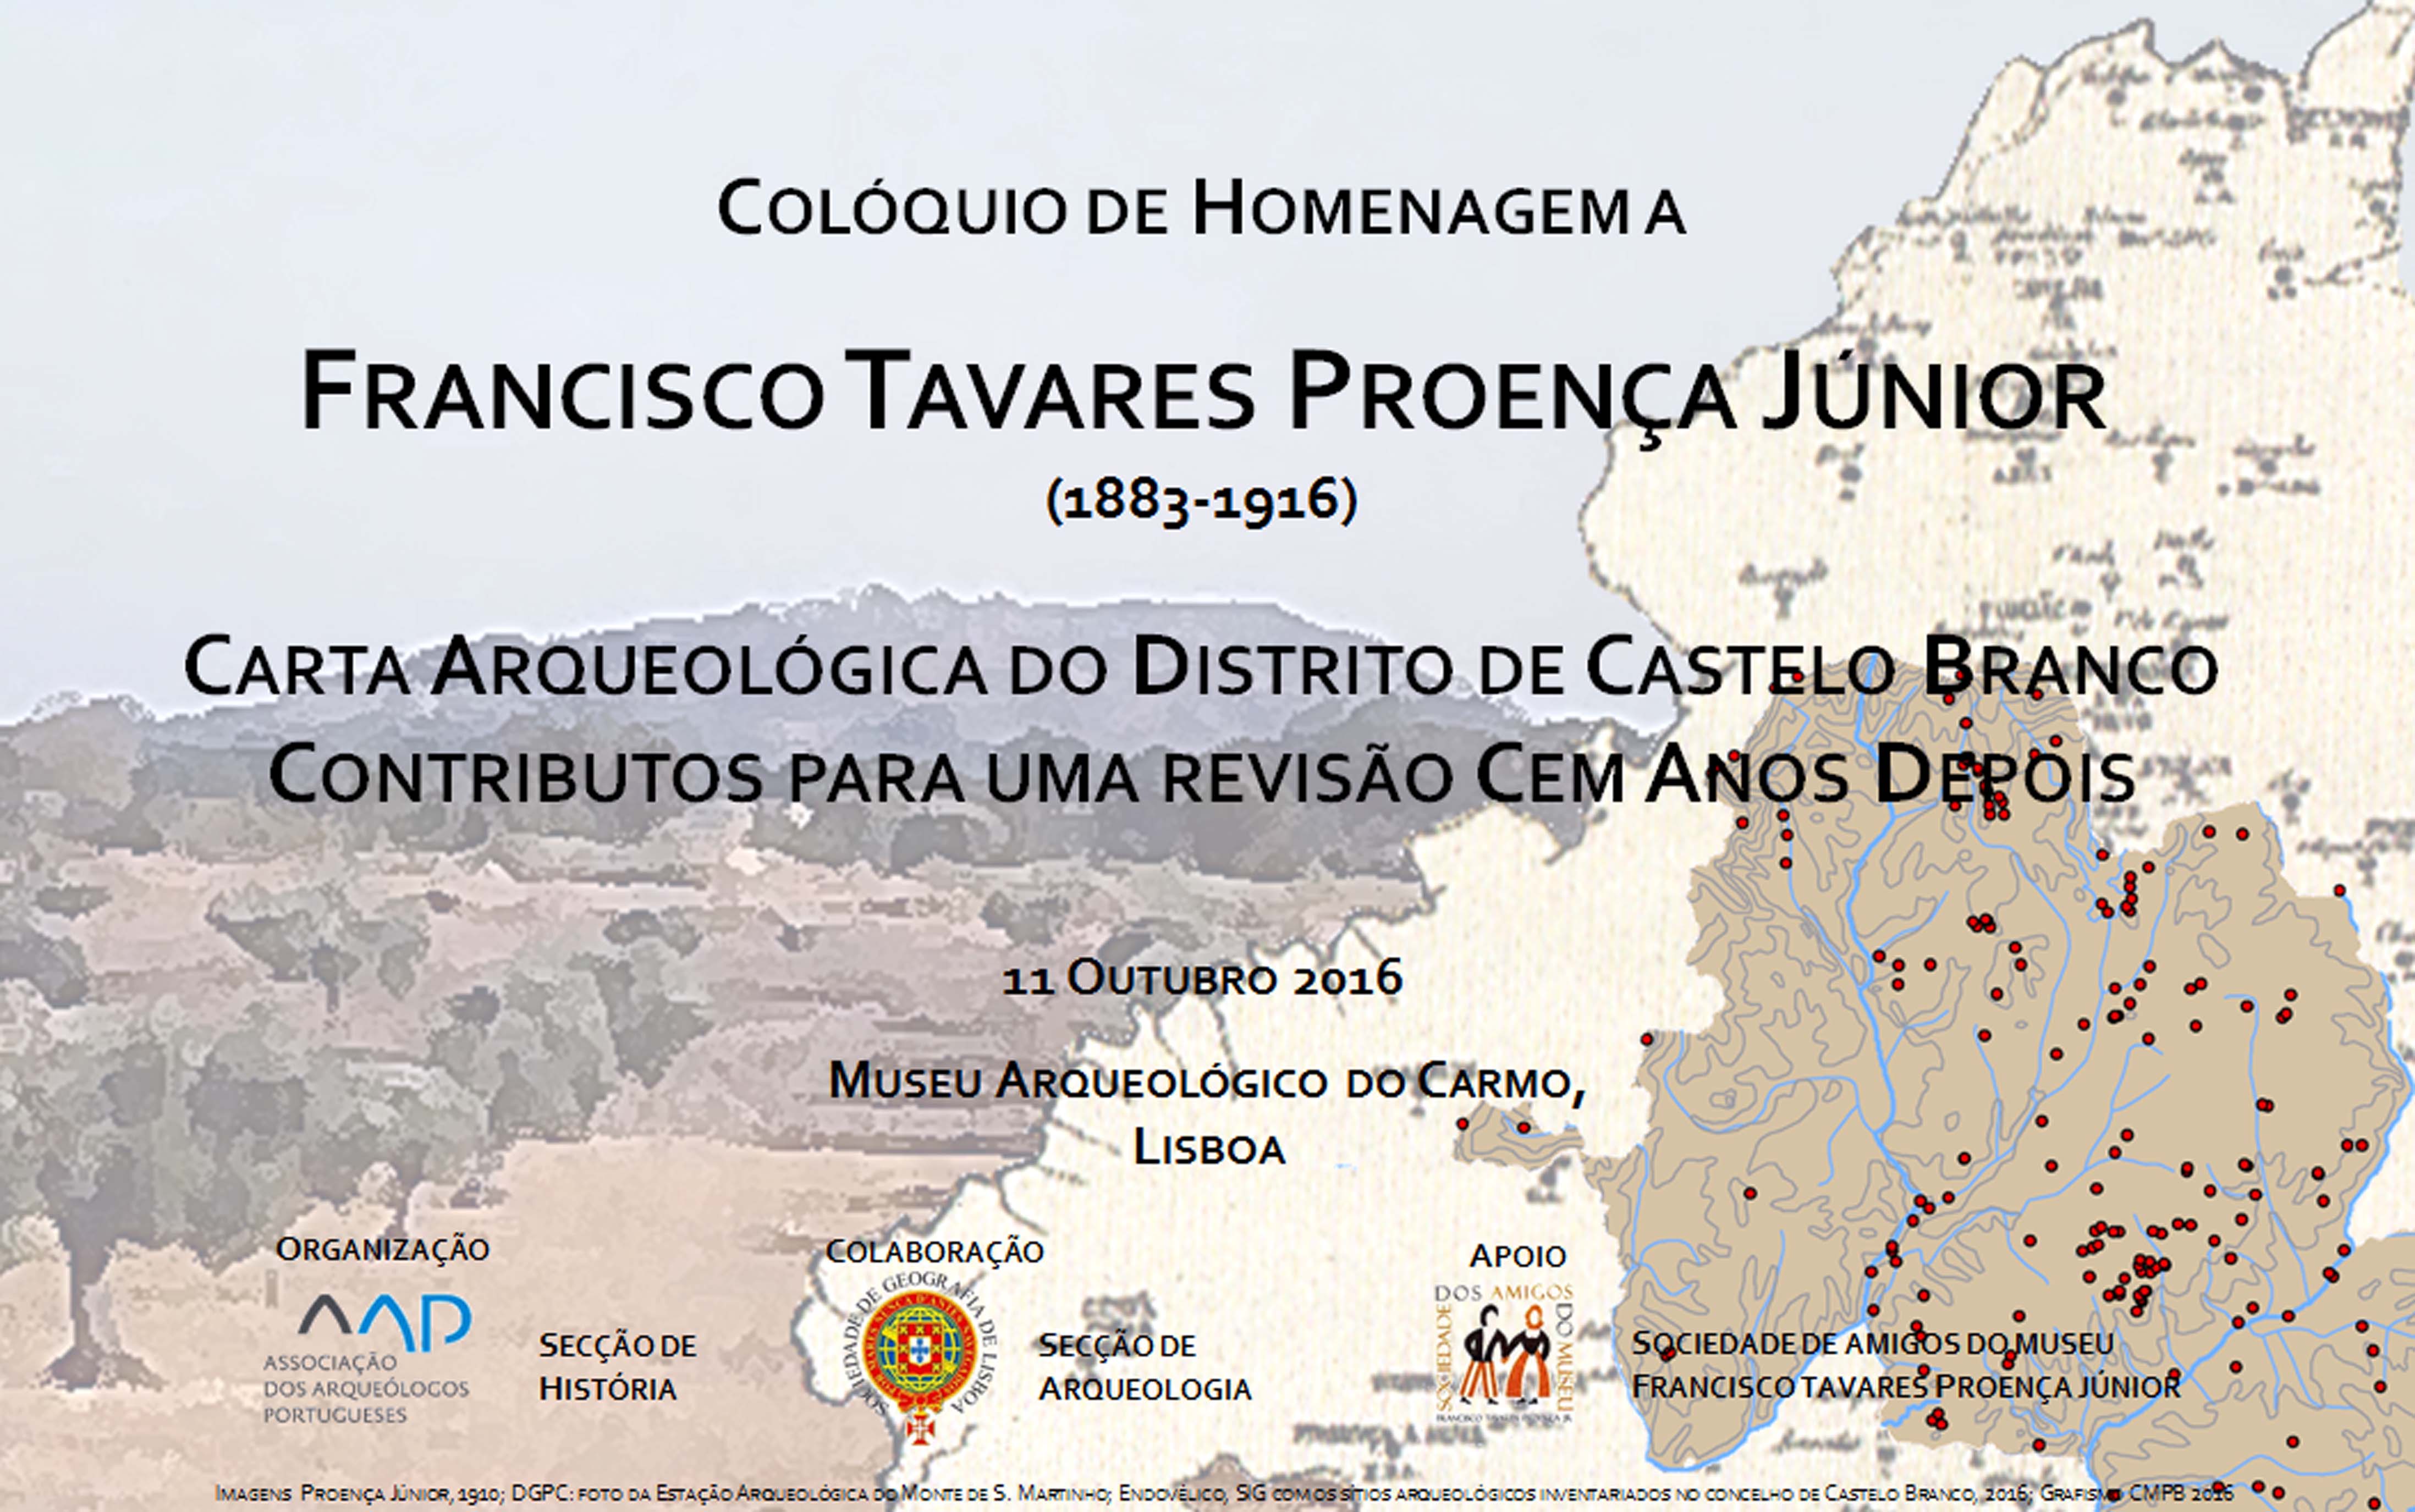 Francisco Tavares Proença Júnior homenageado em Lisboa